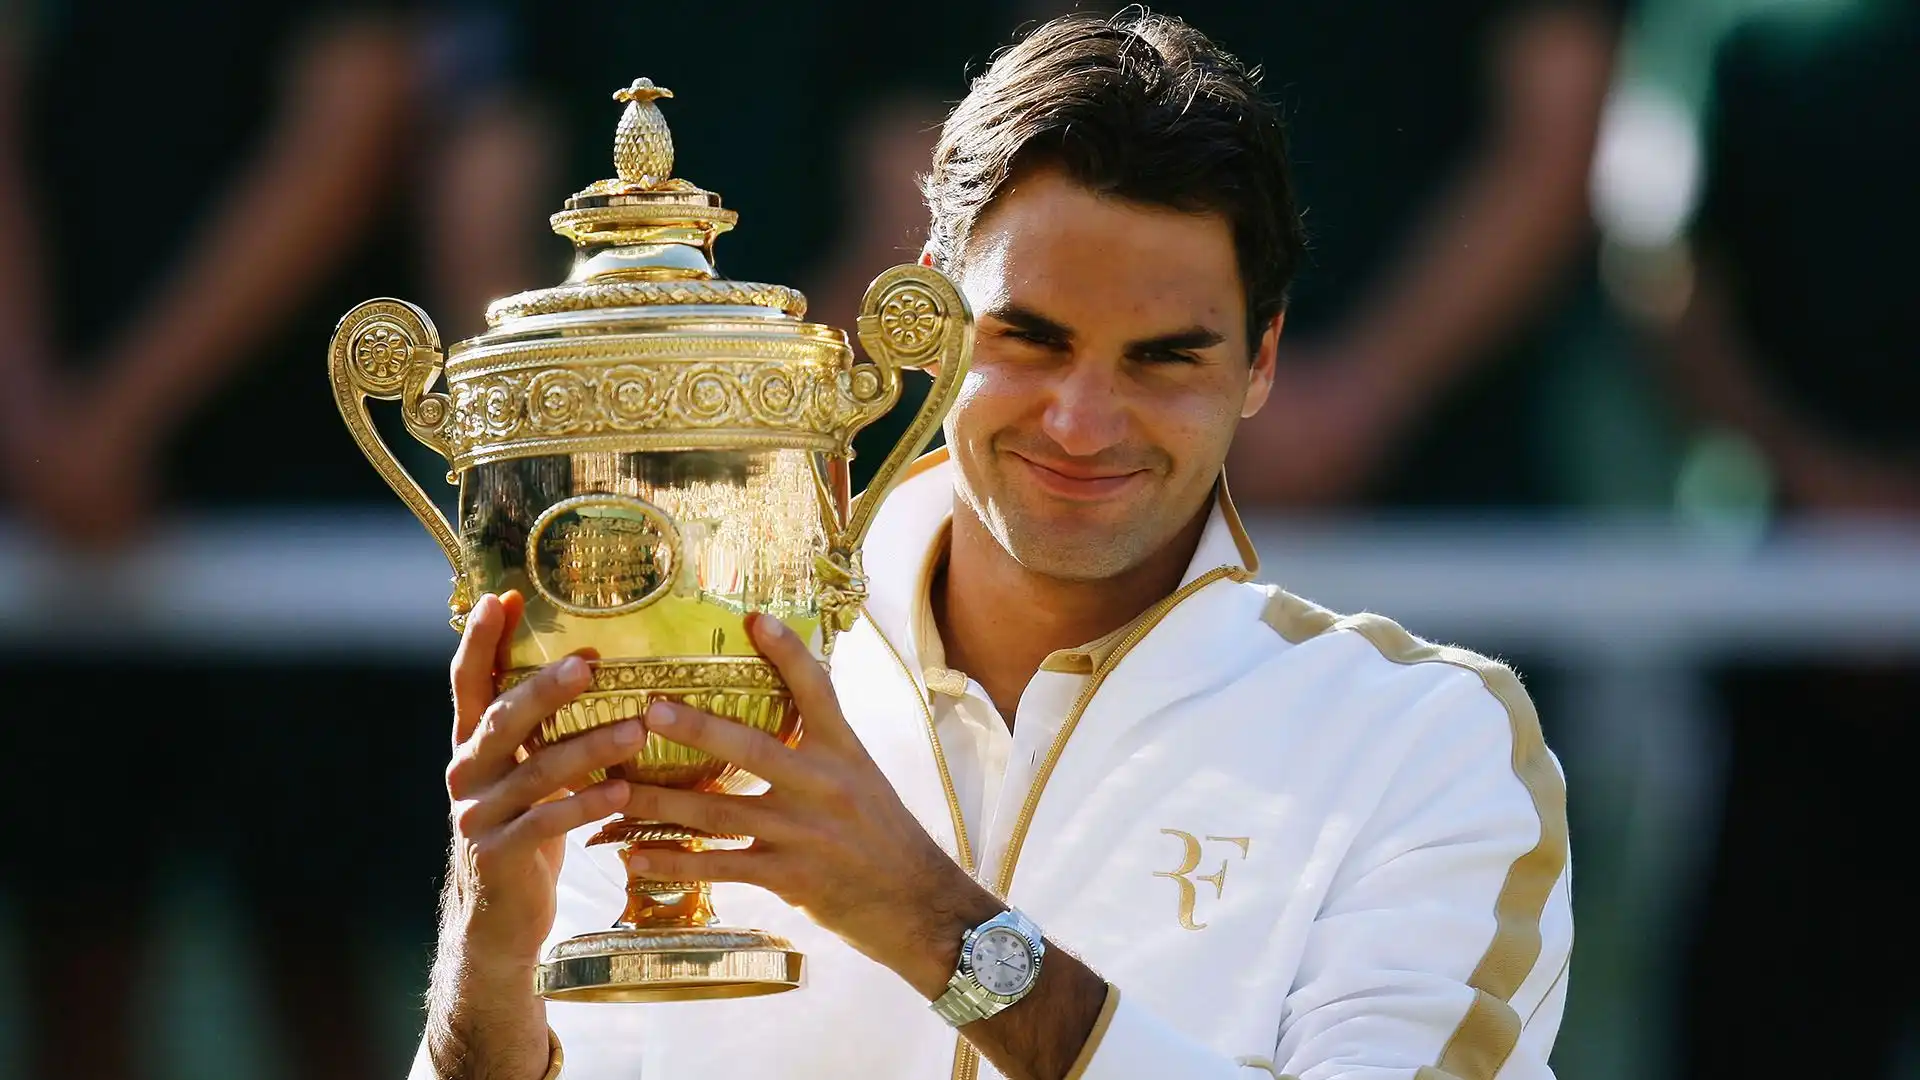 9- L'ex campione del tennis Roger Federer ha guadagnato complessivamente 1.49 miliardi di dollari